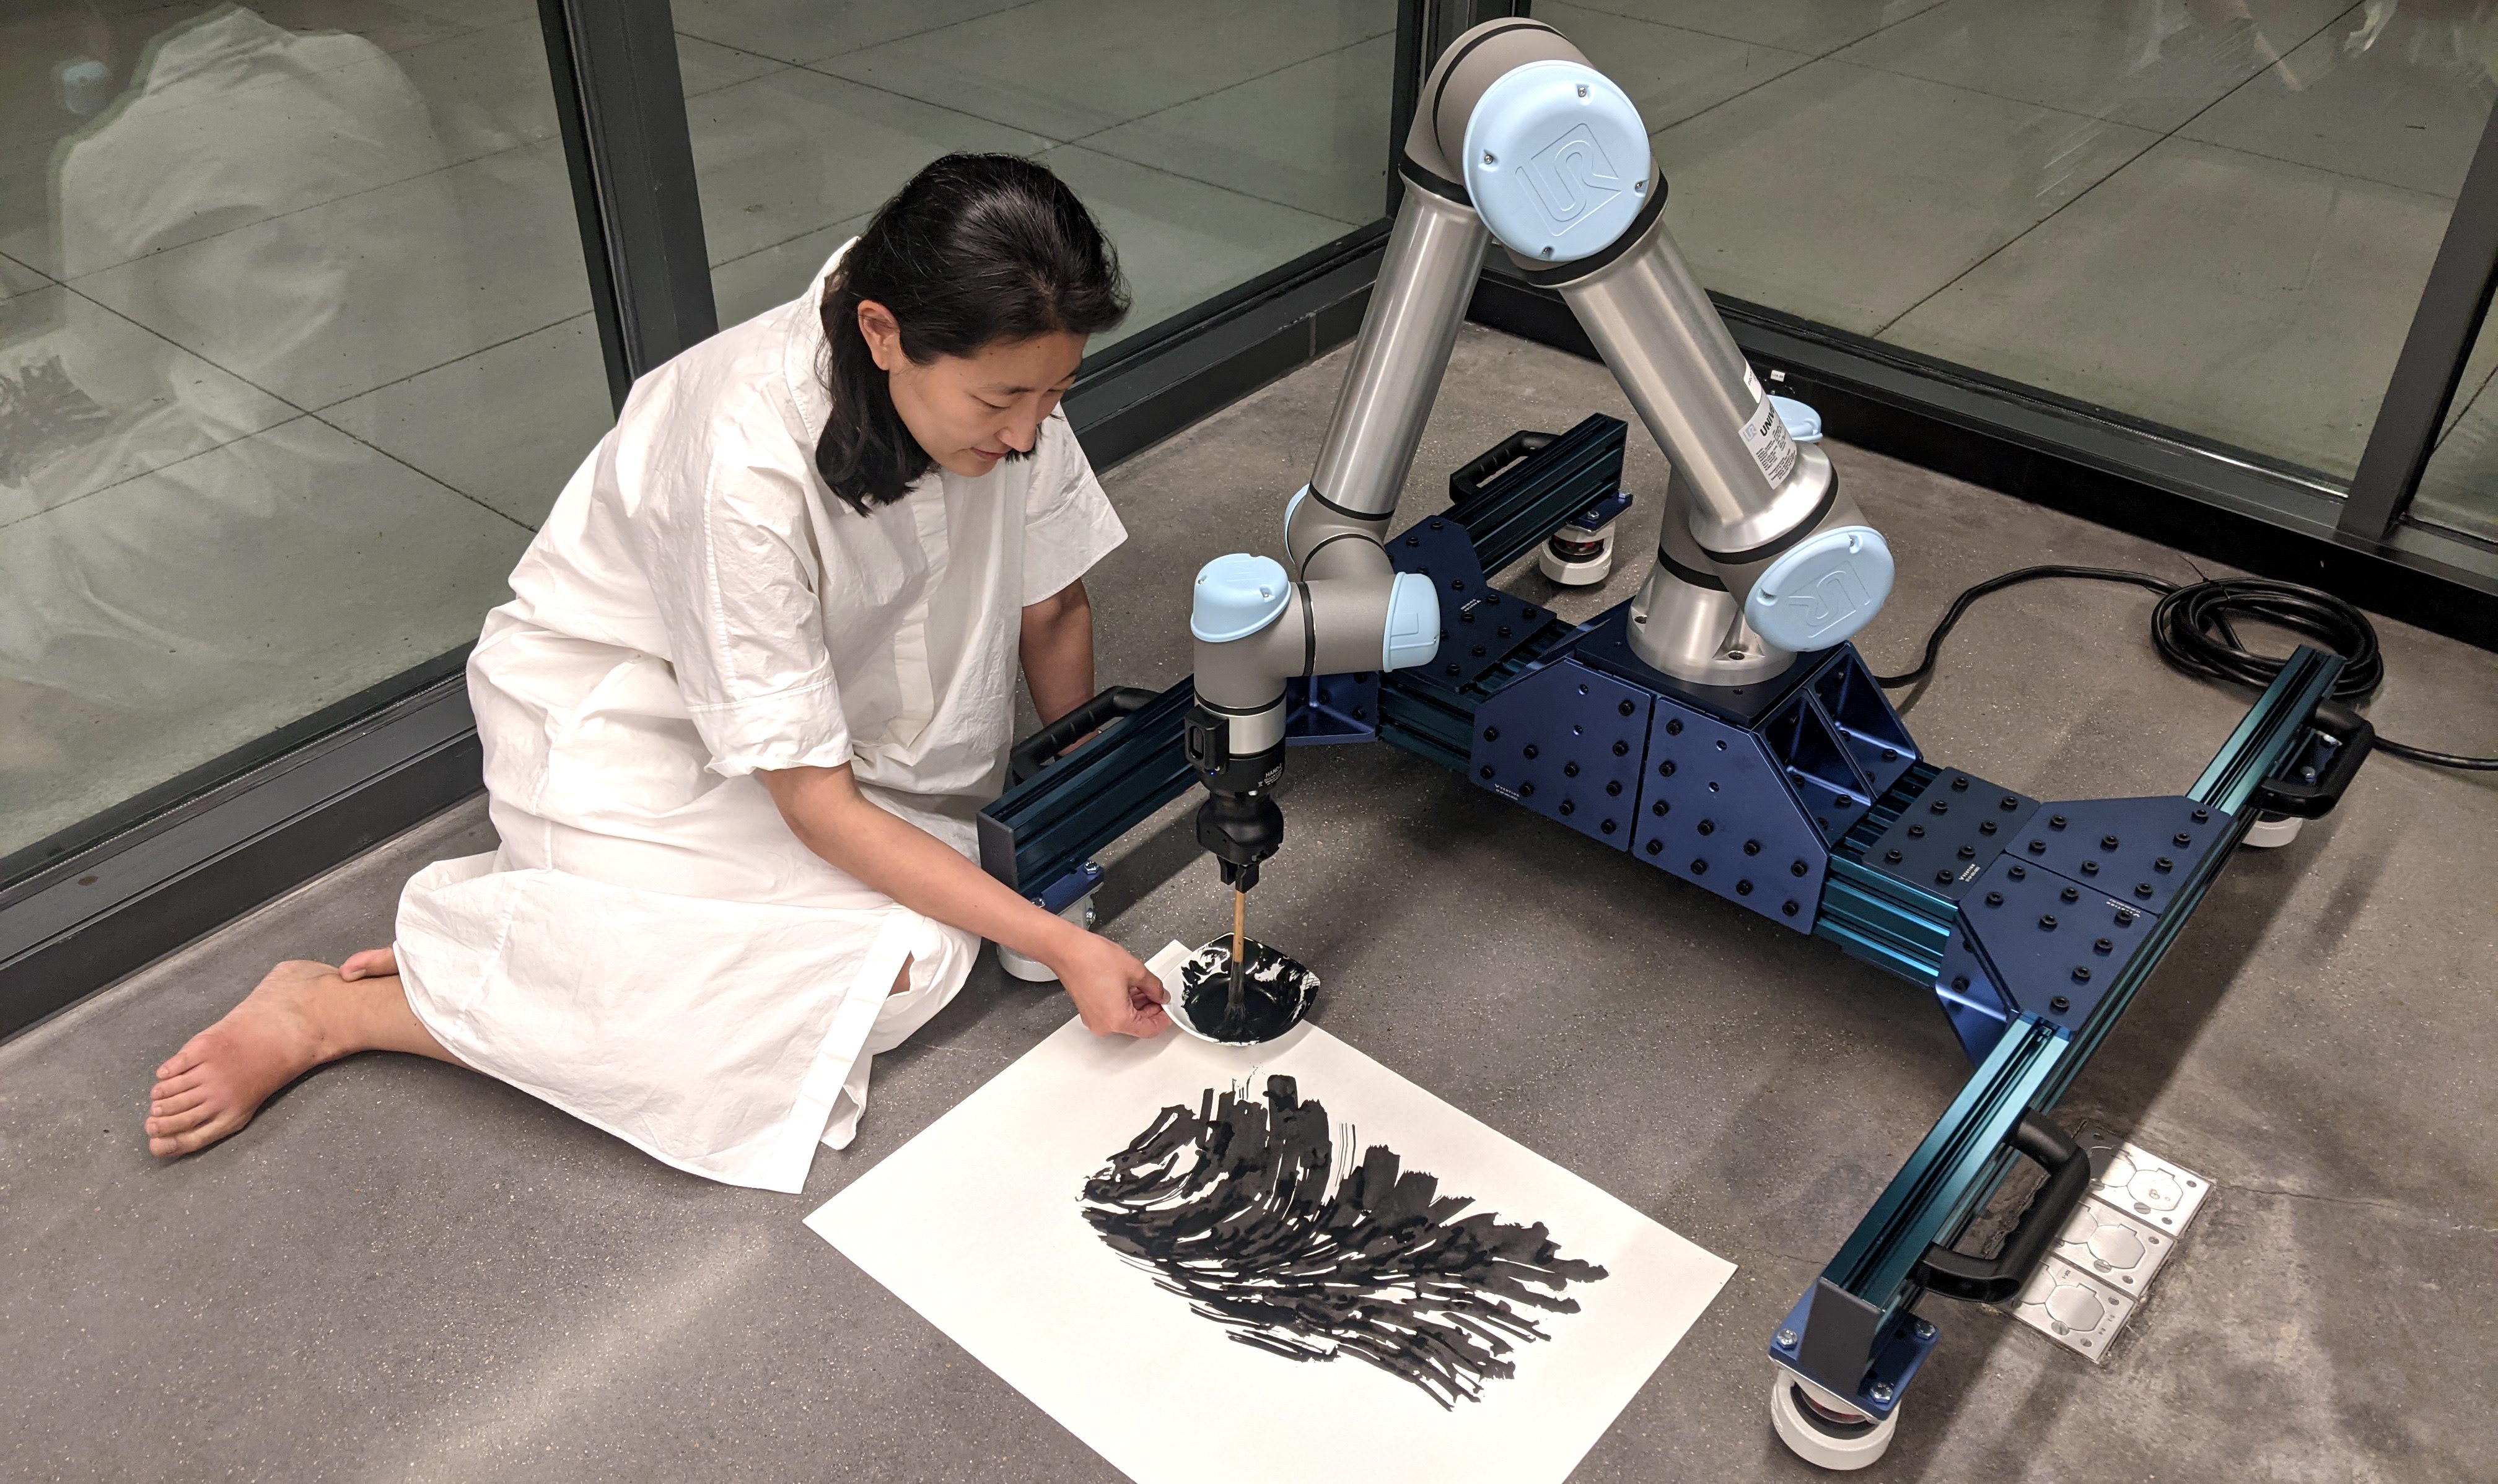 一个拿着画笔的机器人和一个坐在地板上拿着一碗颜料的女人